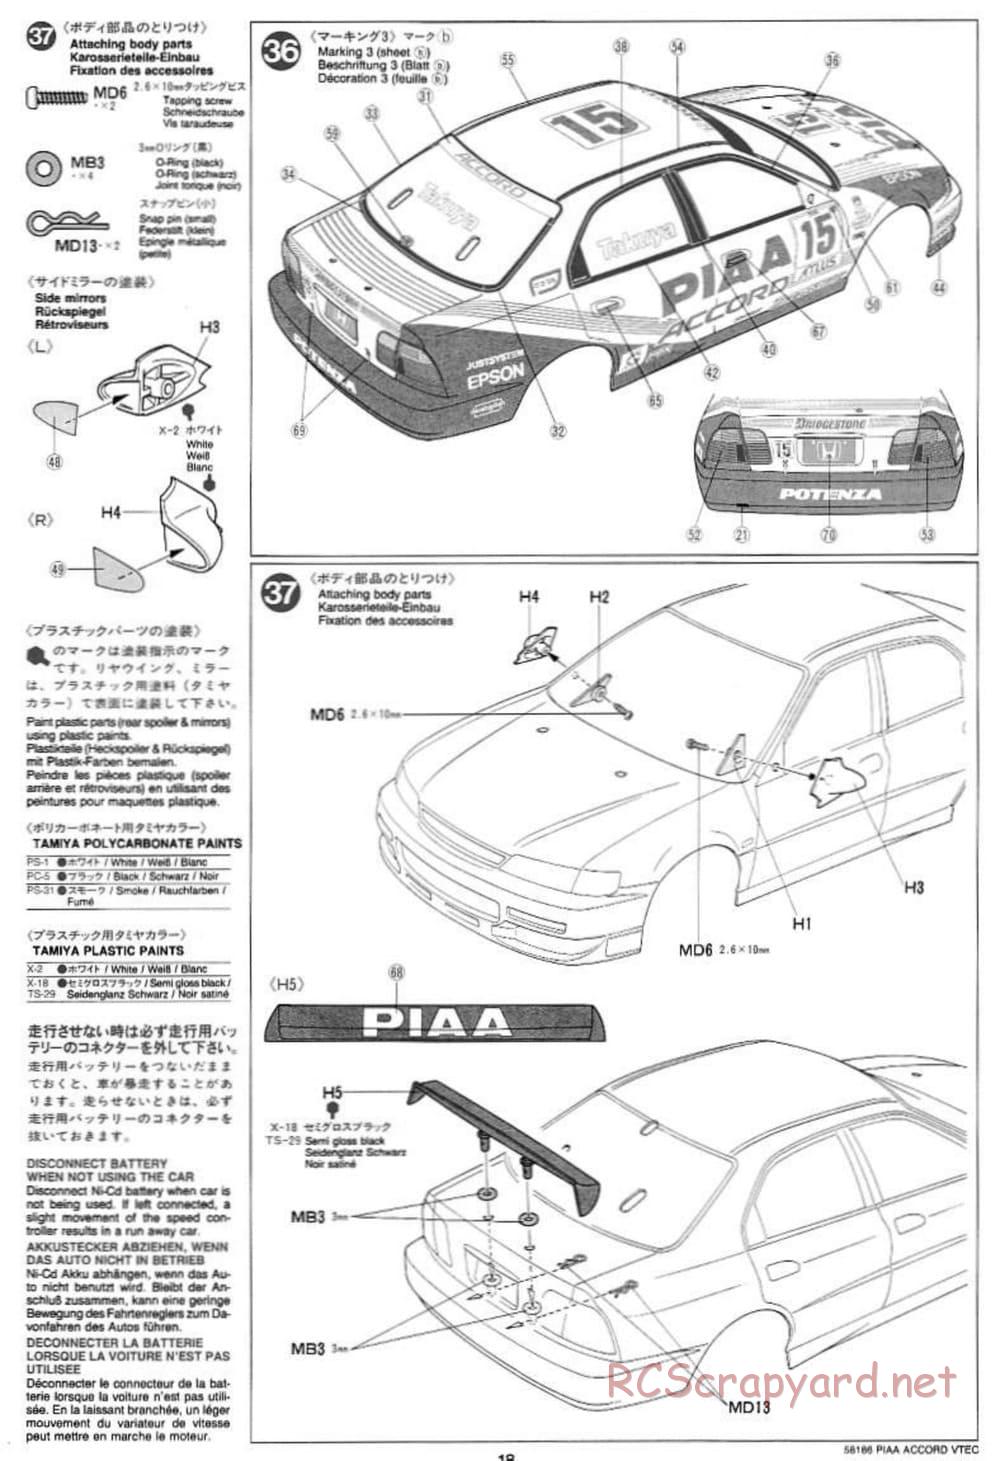 Tamiya - PIAA Accord VTEC - FF-01 Chassis - Manual - Page 18